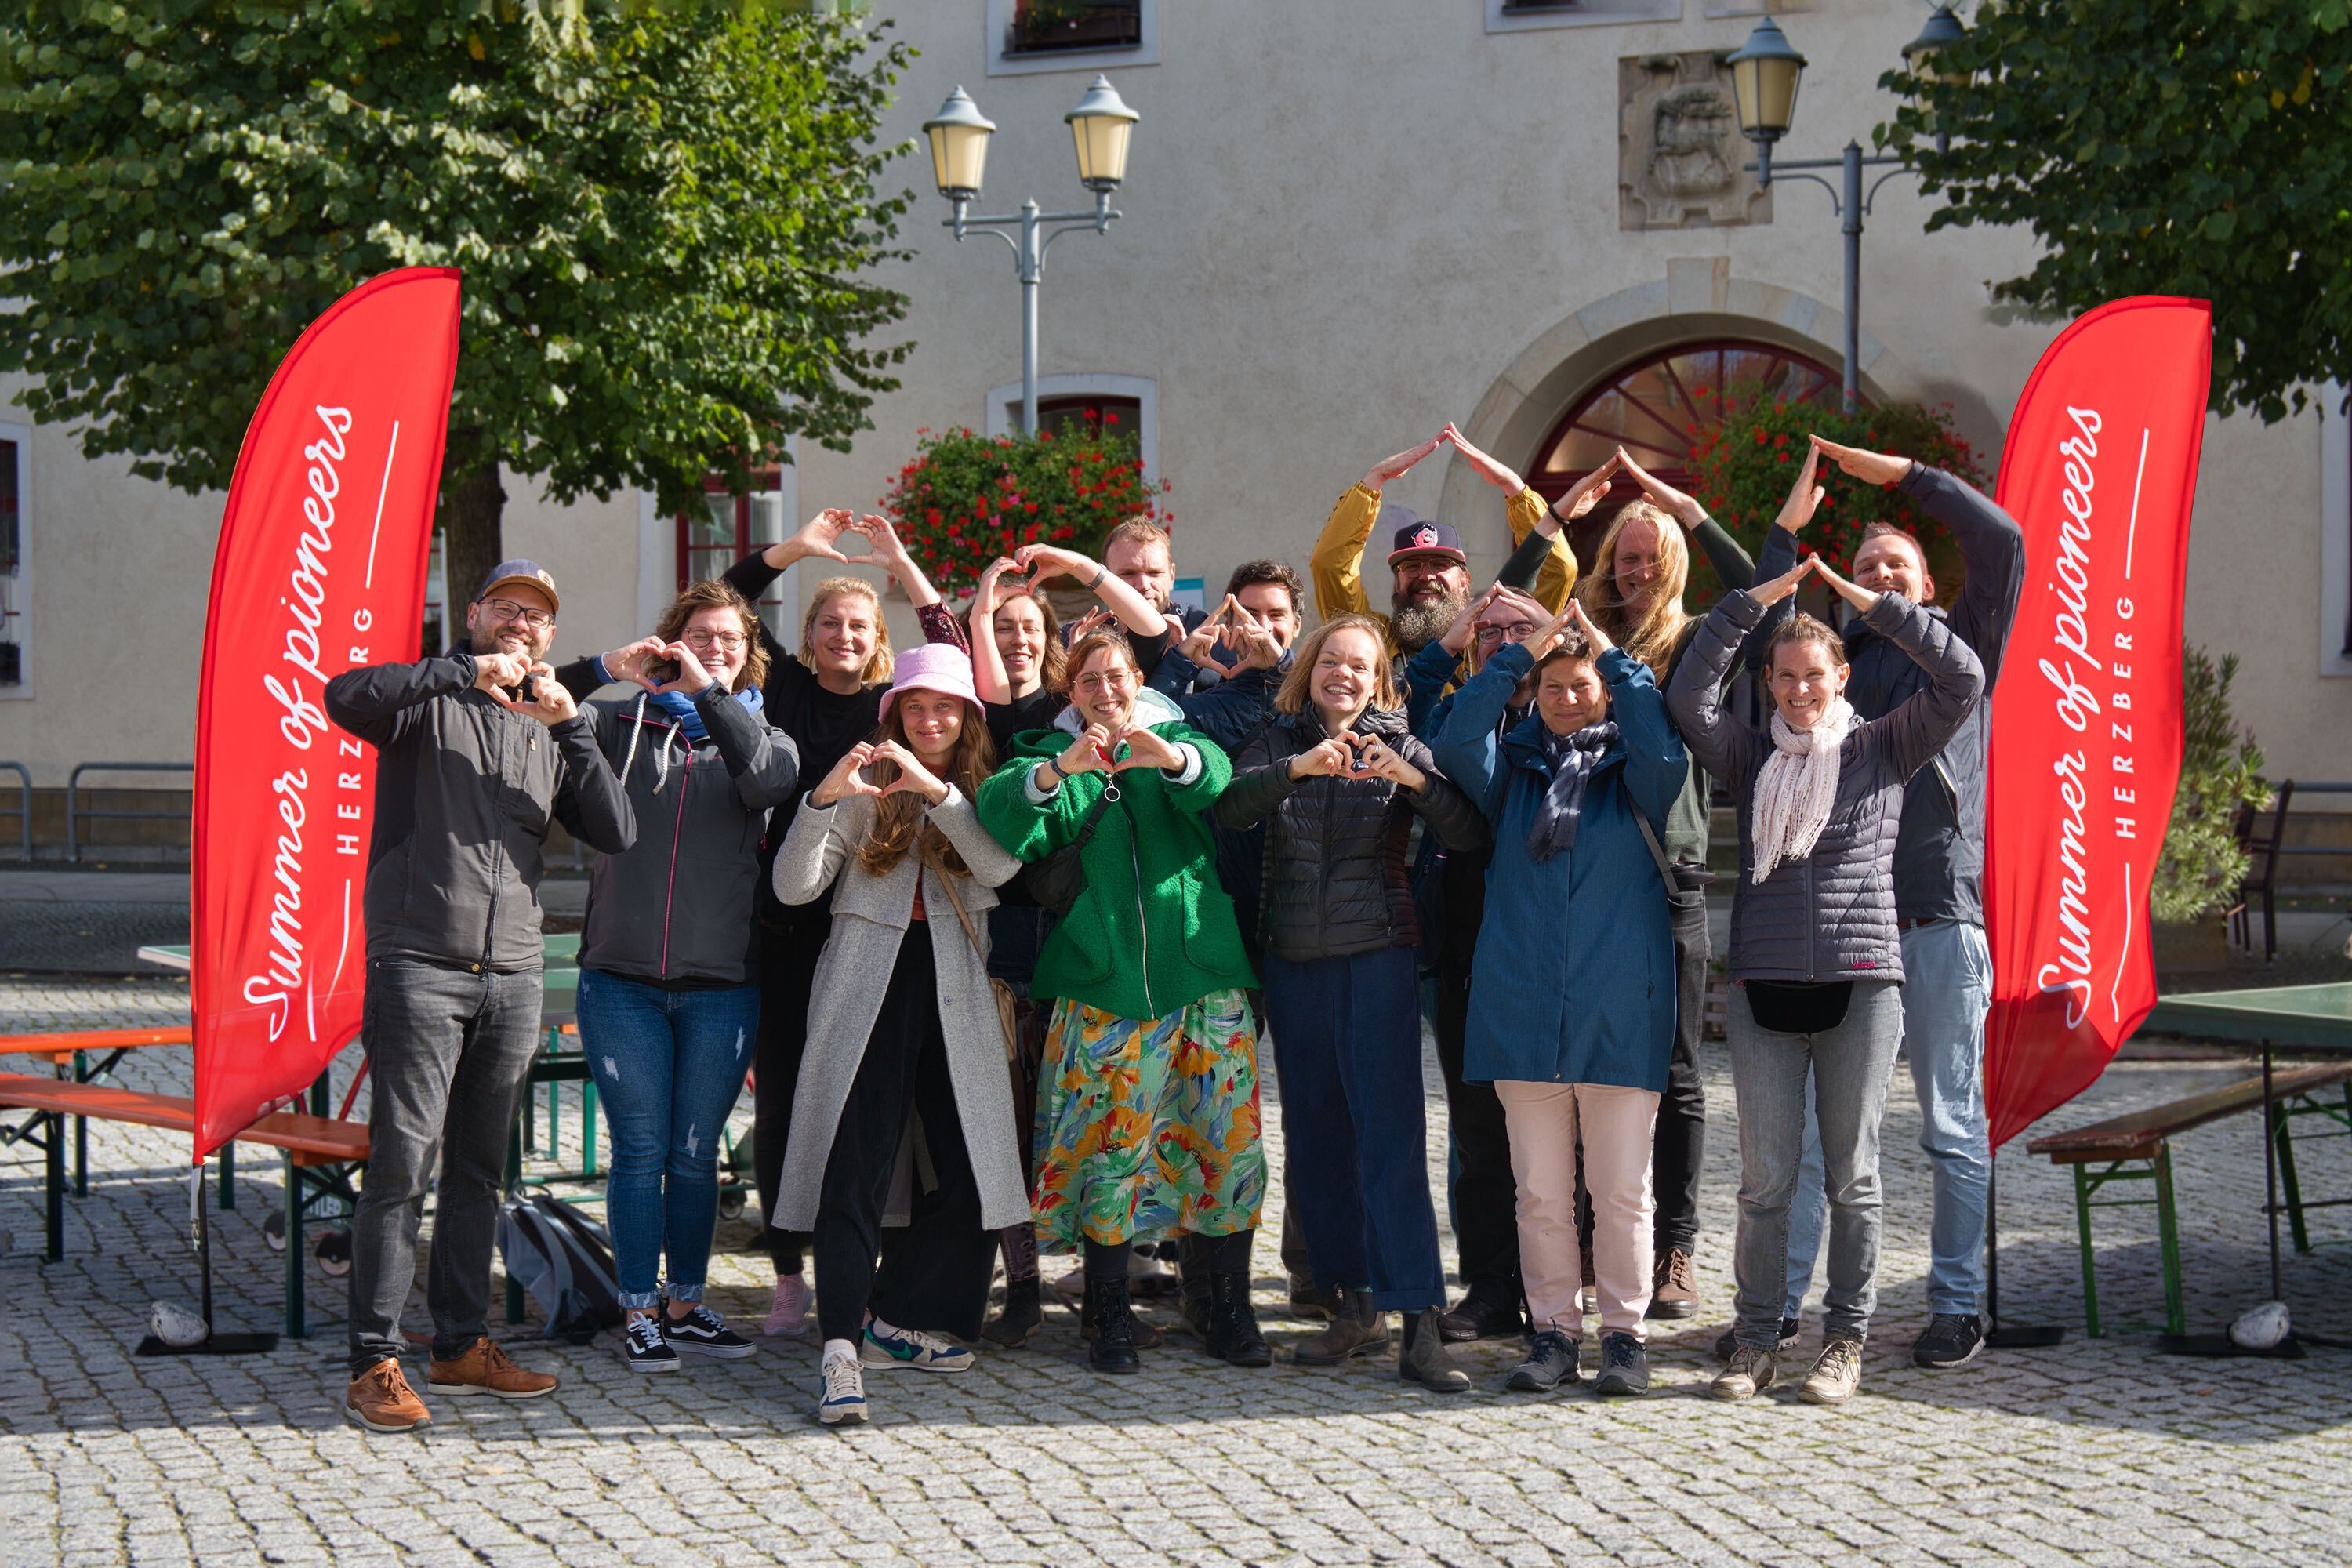 Eine Gruppe von 15 Frauen und Männern steht vor einem Gebäude zwischen zwei roten Fahnen mit der Aufschrift "Summer og Pioneers". Mehrere Personen formen ihre beiden Hände zu einem Herz.